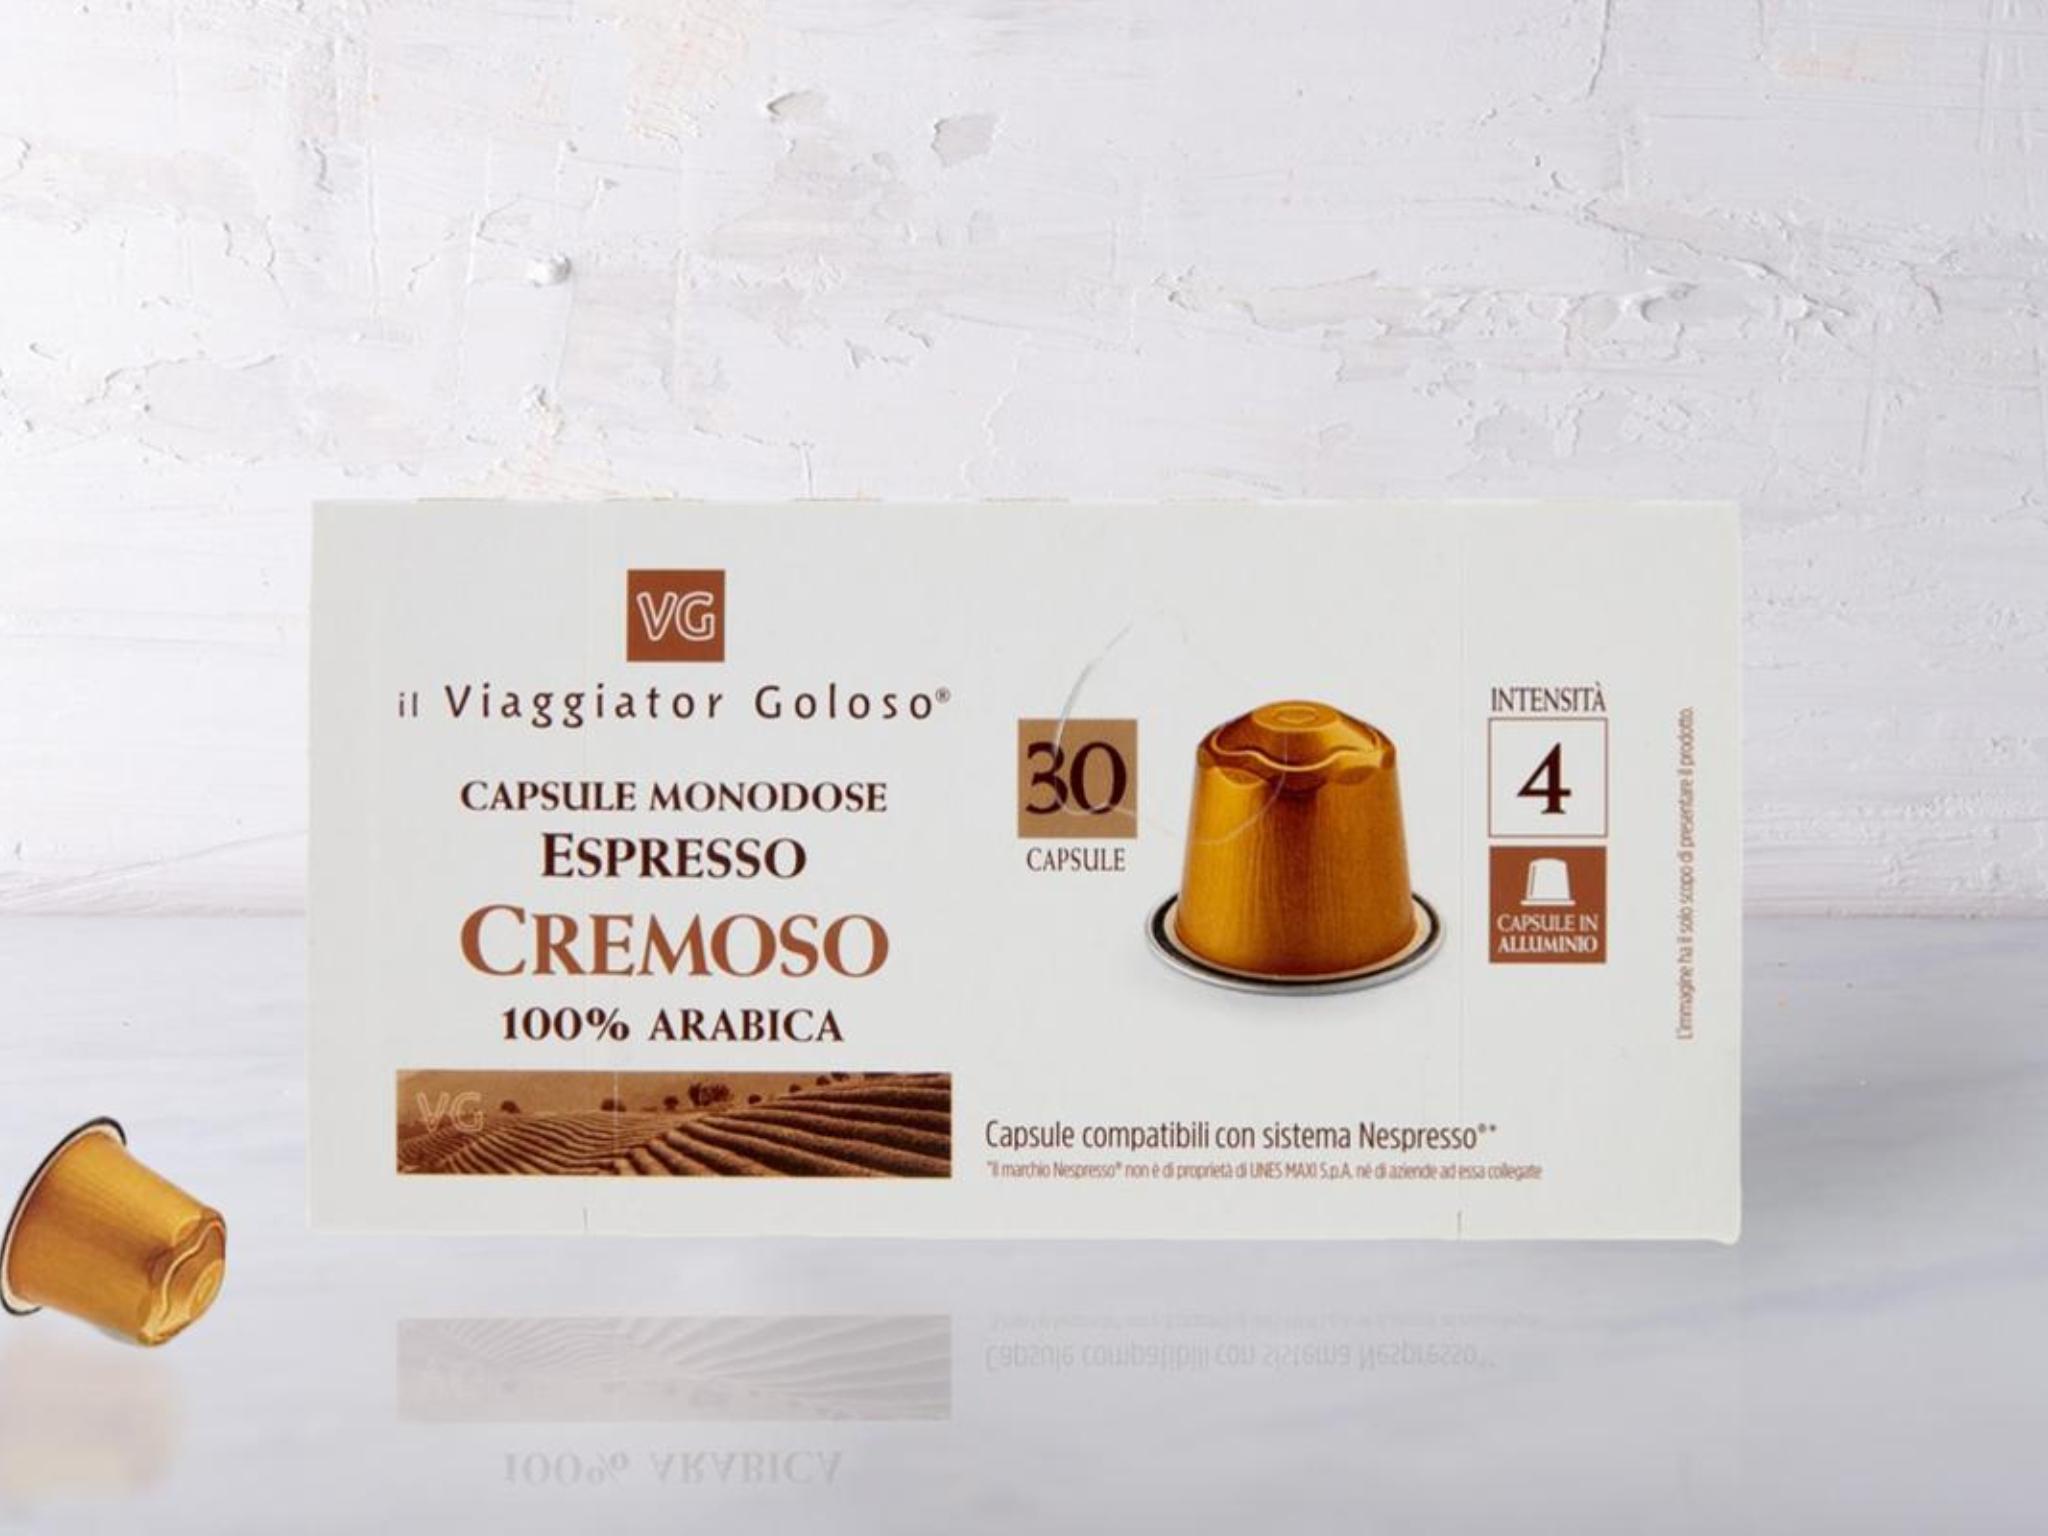 30 capsule espresso cremoso 100% arabica